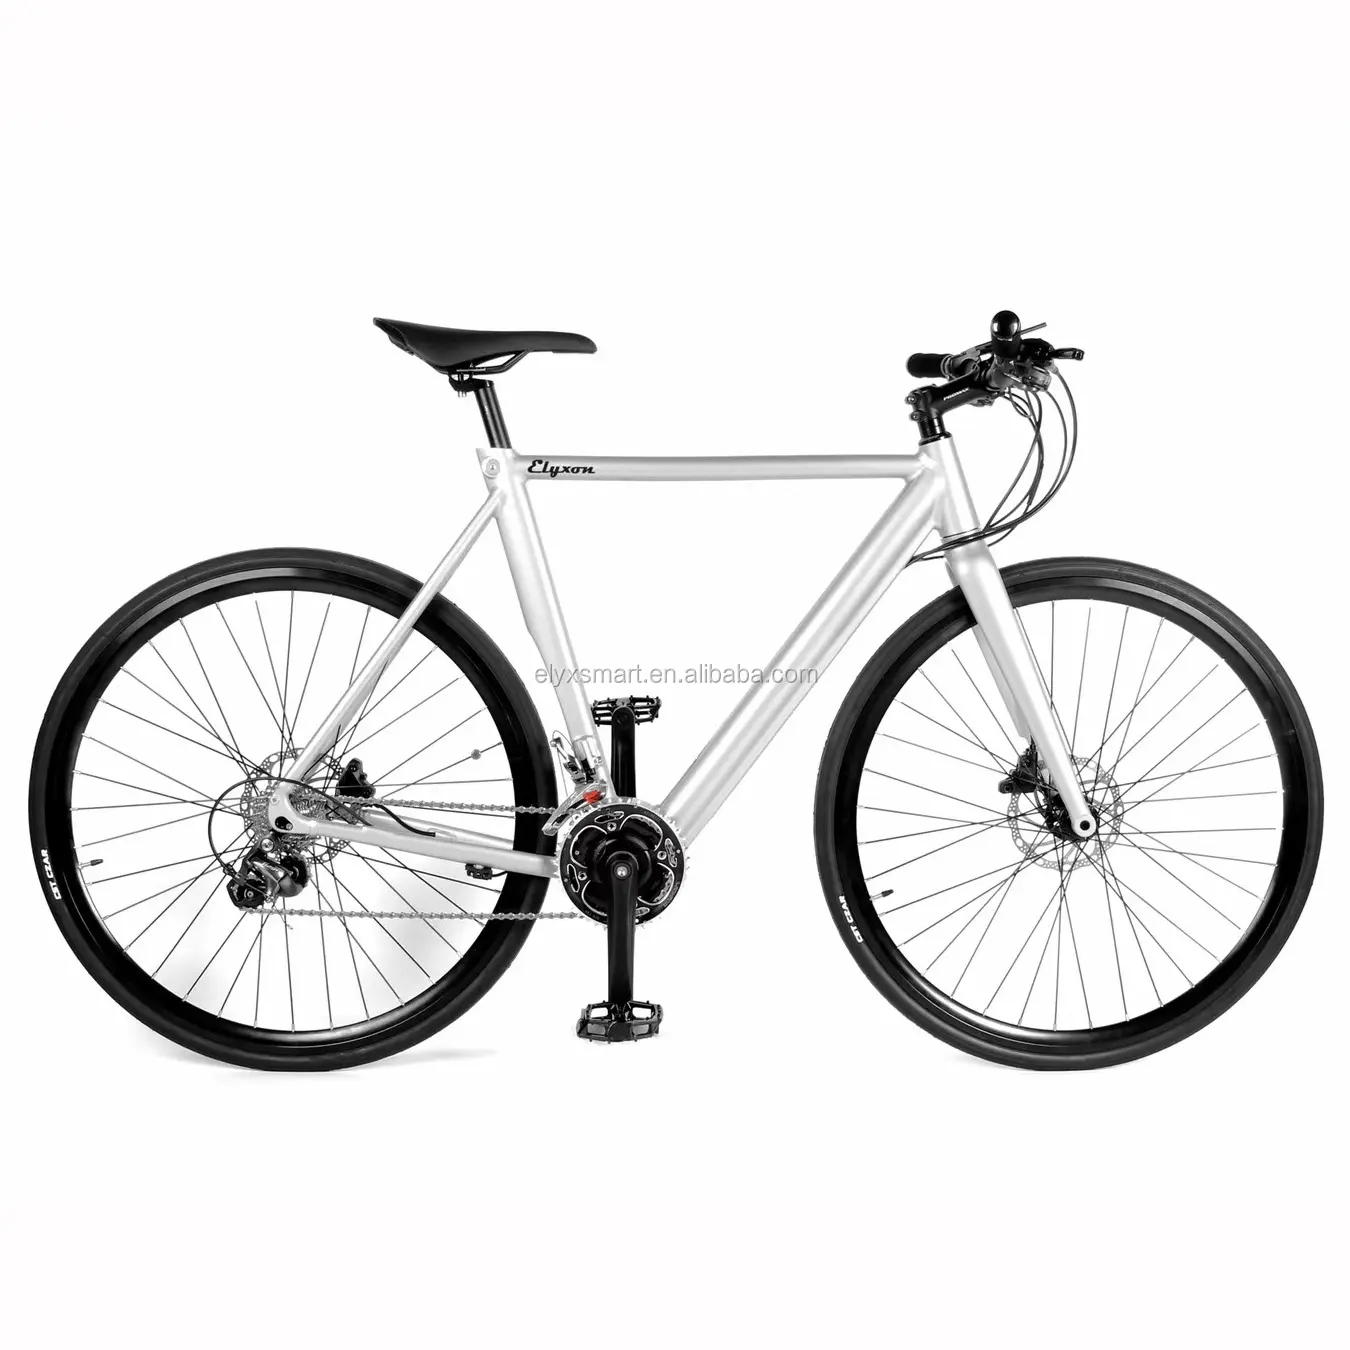 Оптовая цена, легкий высококлассный горный электрический велосипед, электрический велосипед Elfin 1,0 цветов, индивидуальный 700C Электрический гоночный фиксатор